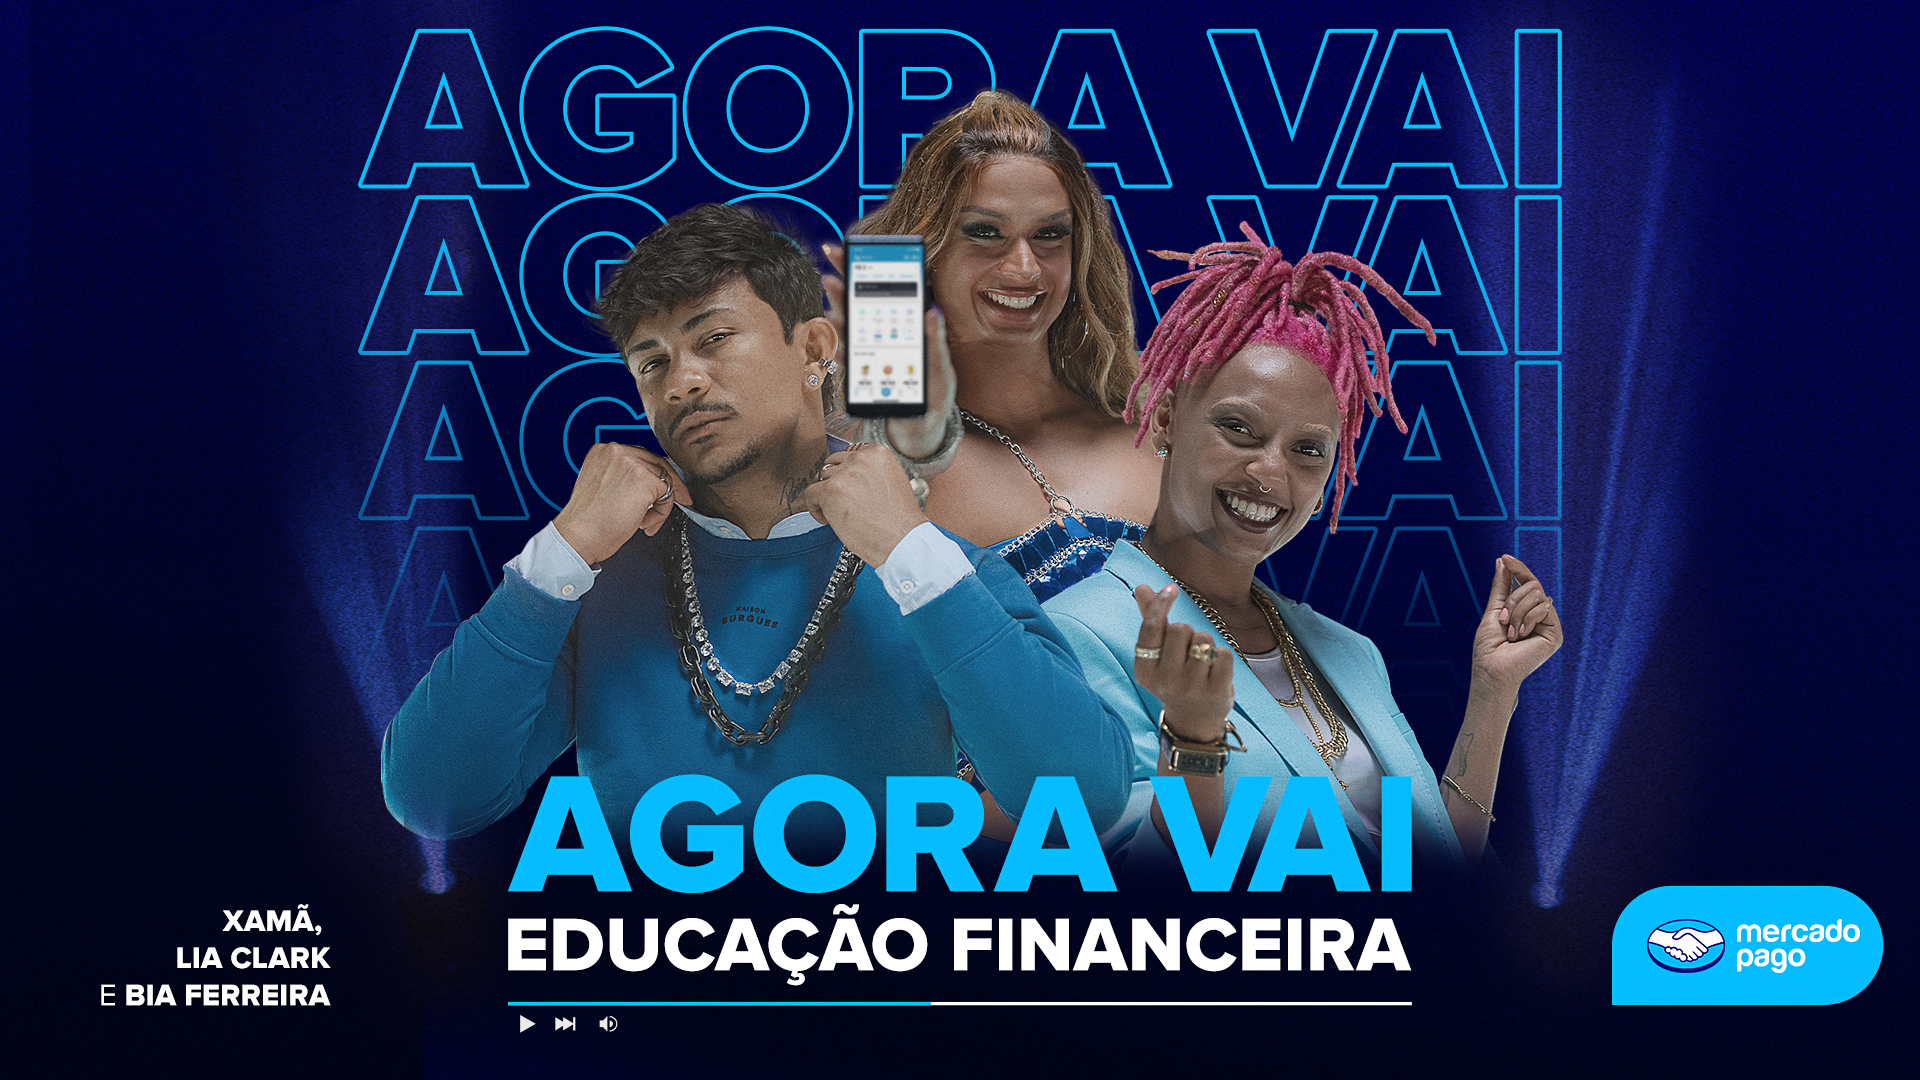 Banner da música Agora Vai (Educação Financeira), mostra os cantores Xamã, Lia Clark e Bia Ferreira ao centro e o logo do Mercado Pago no canto inferior direito.